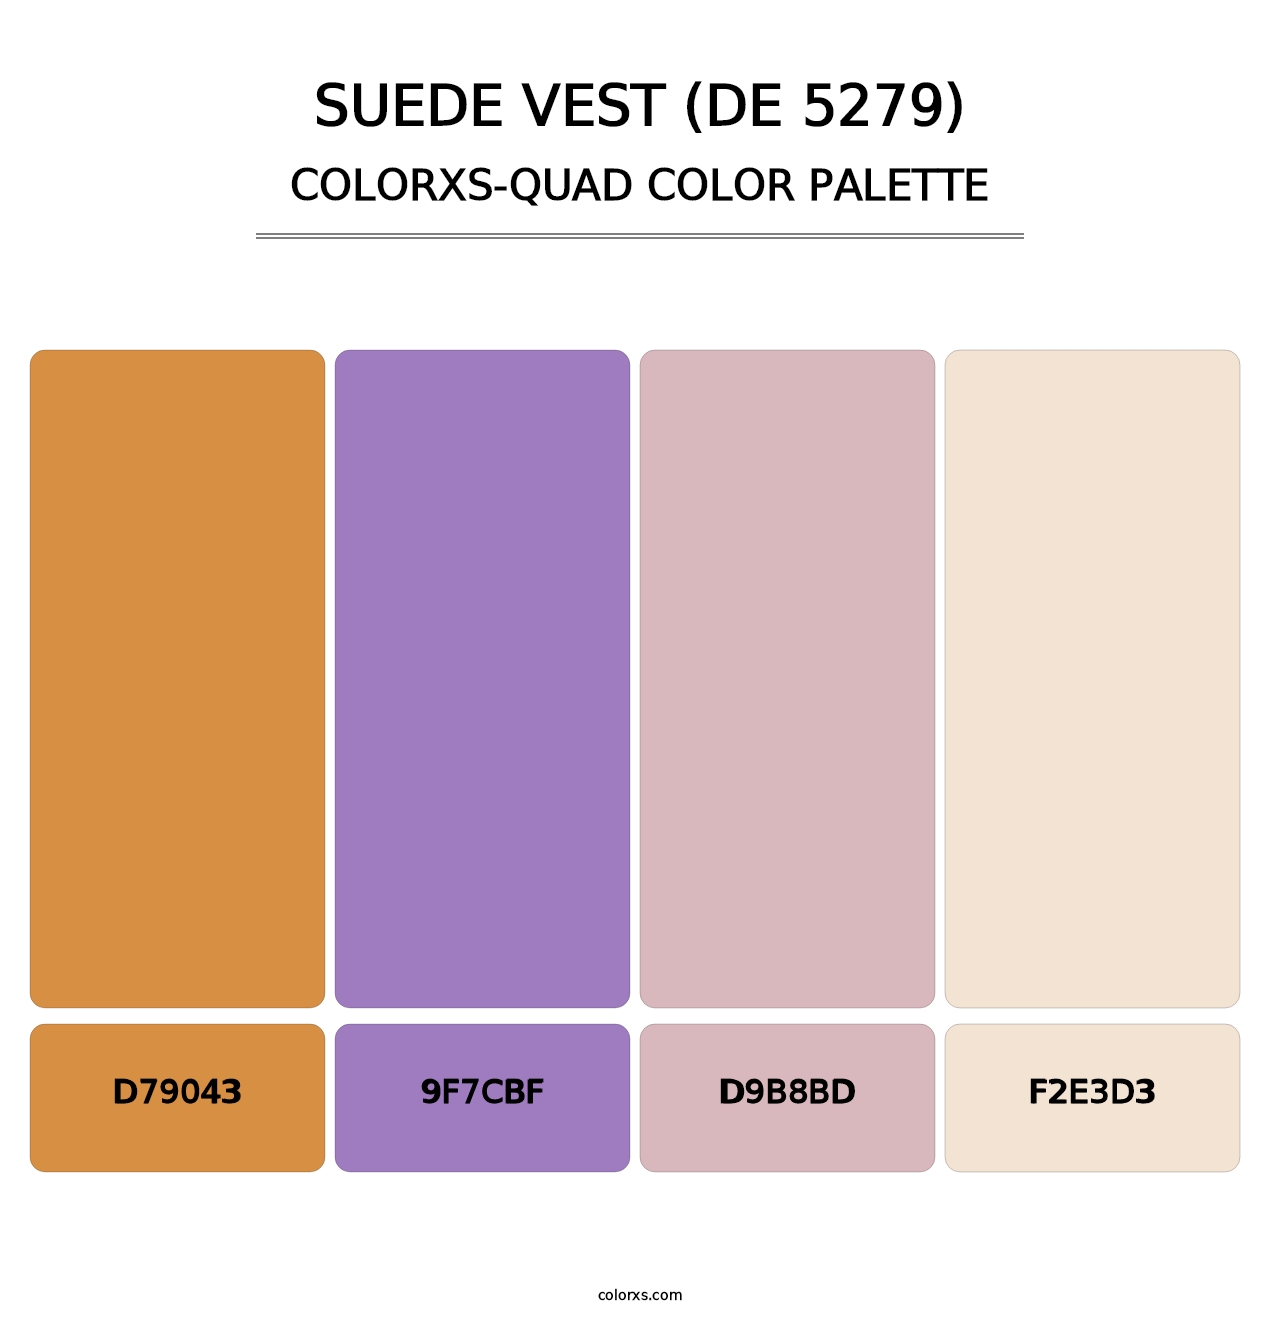 Suede Vest (DE 5279) - Colorxs Quad Palette